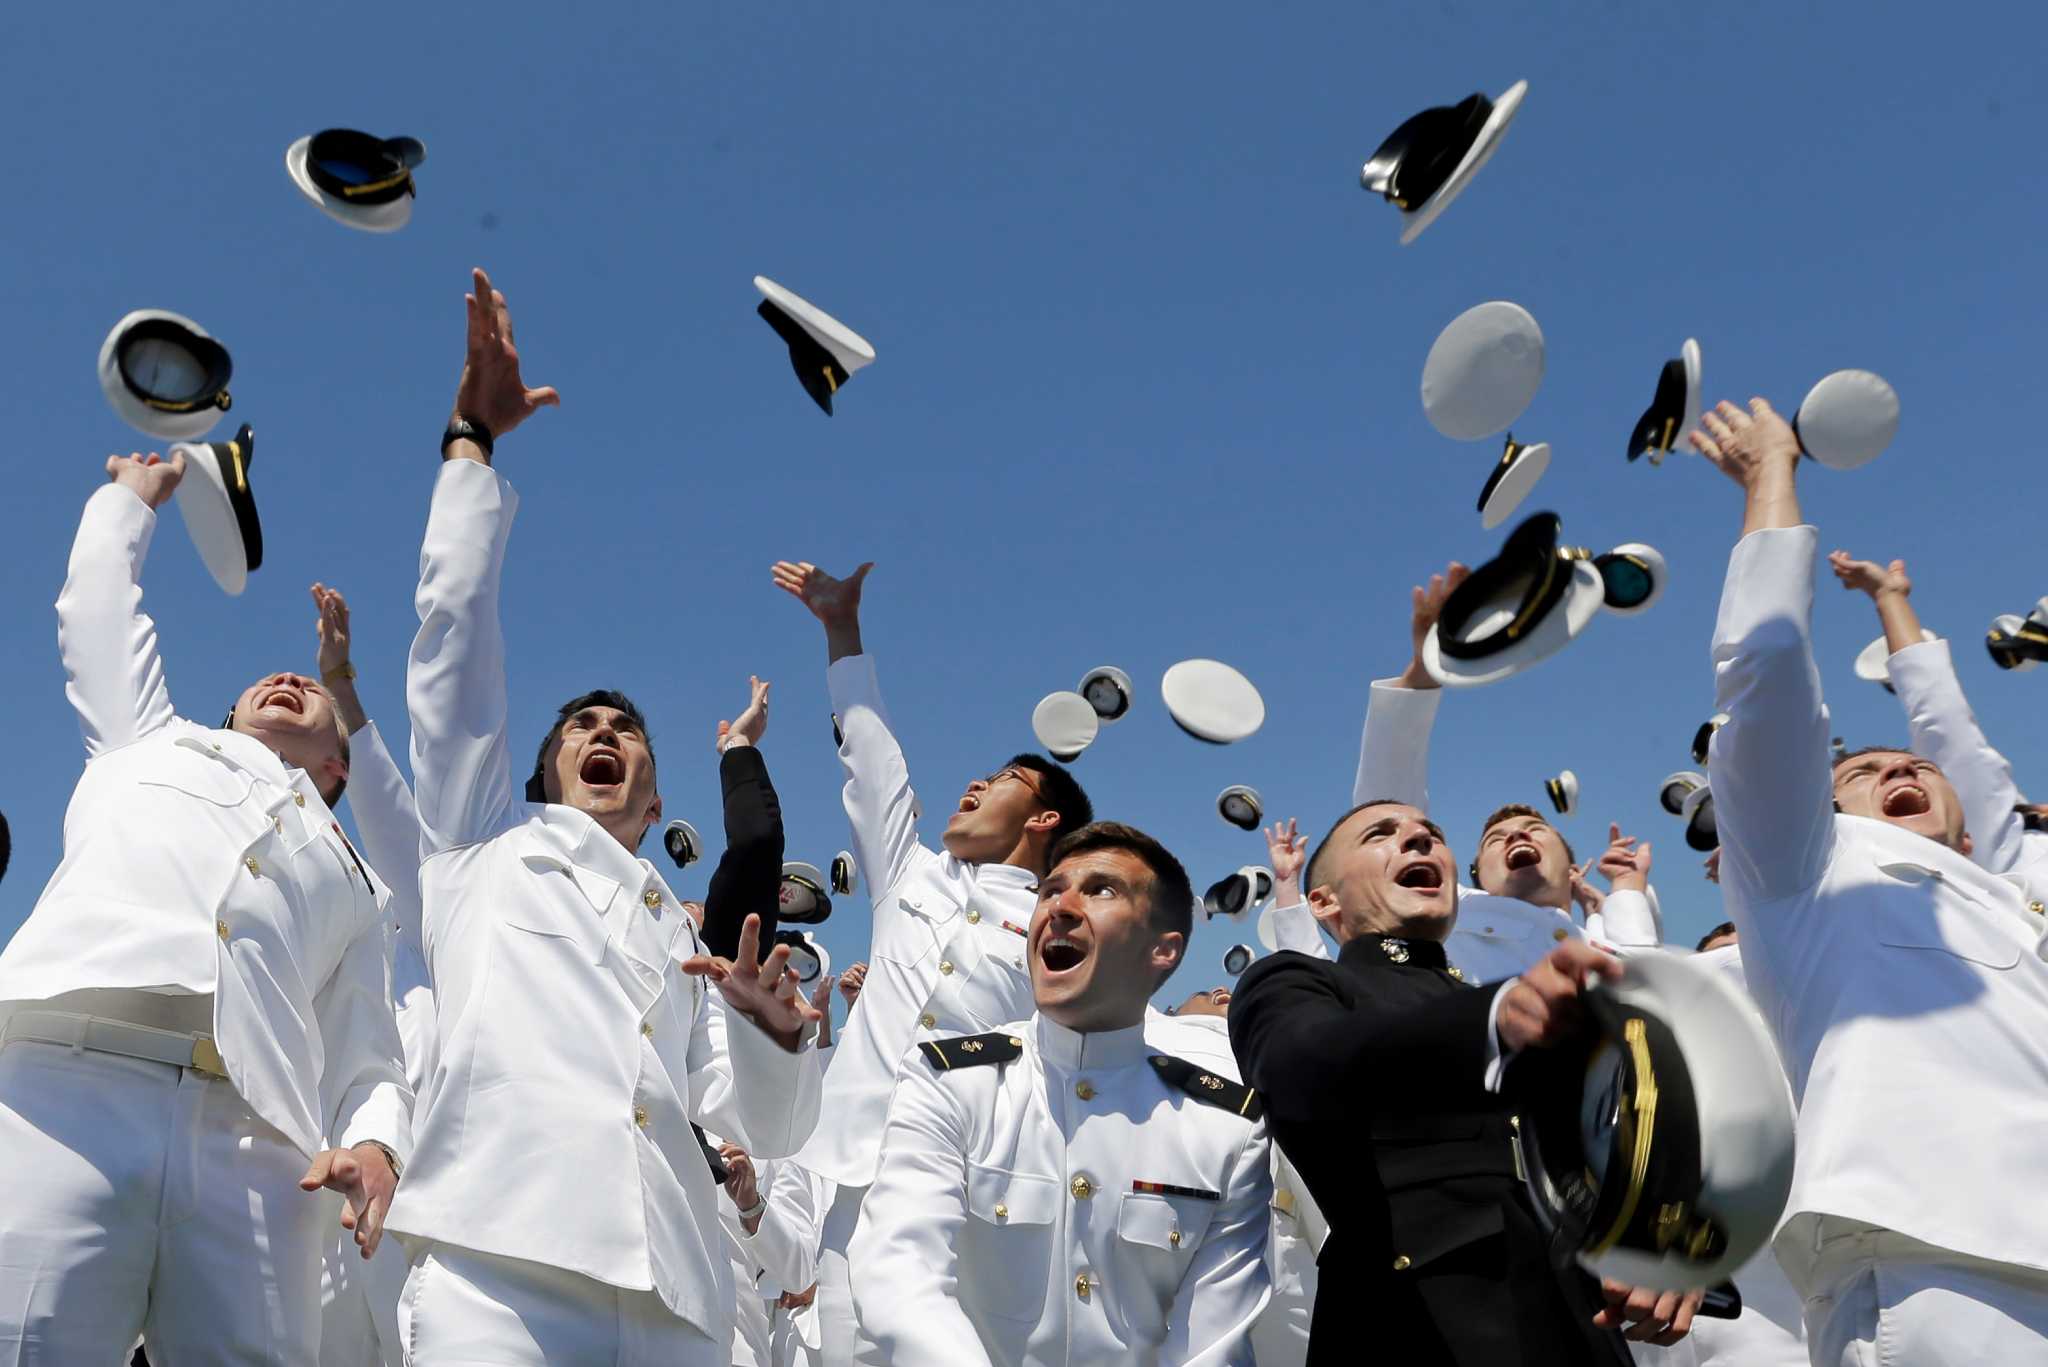 Naval Academy grads toss hats